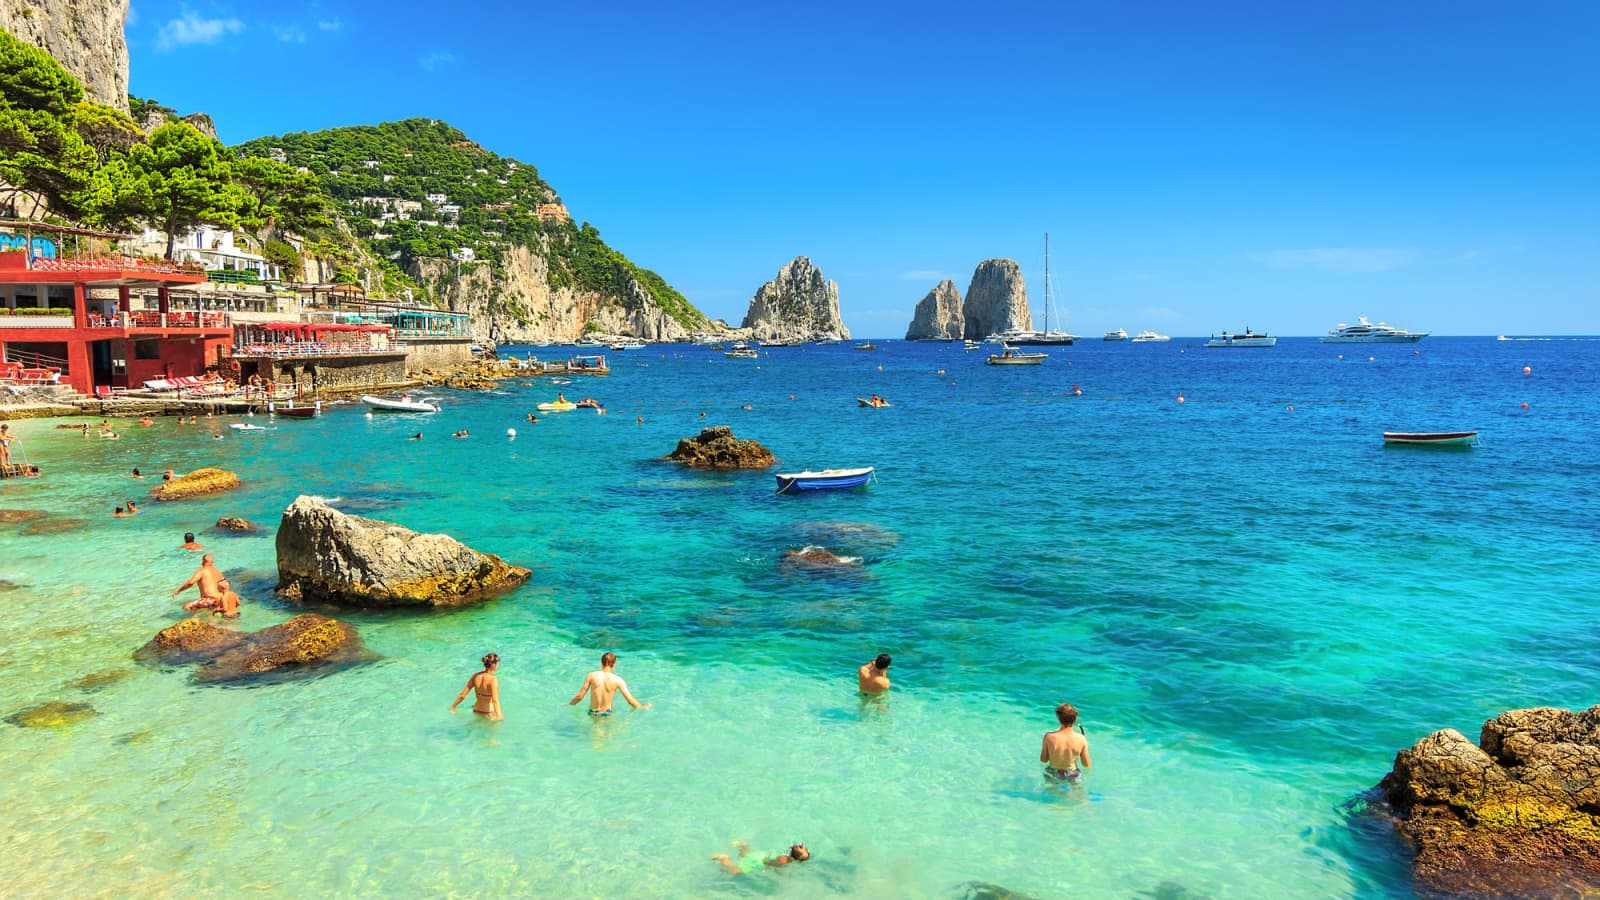 Beautiful Capri Island in Southern Italy